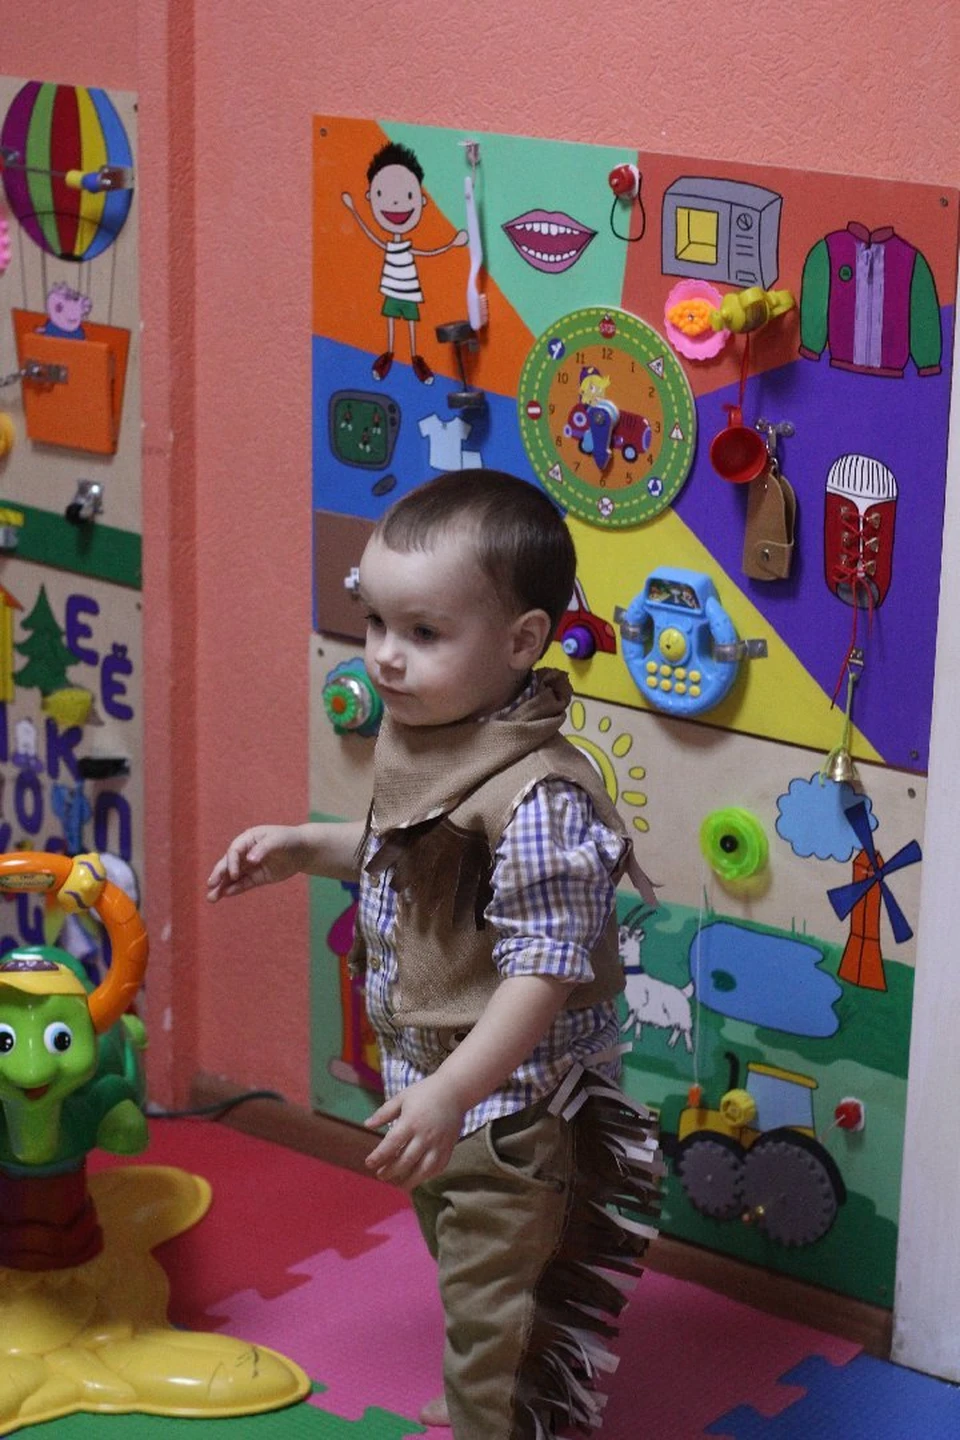 Большой популярностью в "Тарараме" пользуются тематические бизиборды, сделанные по эскизам Галины. Это такие развивающие доски с кнопочками и замочками для малышей.